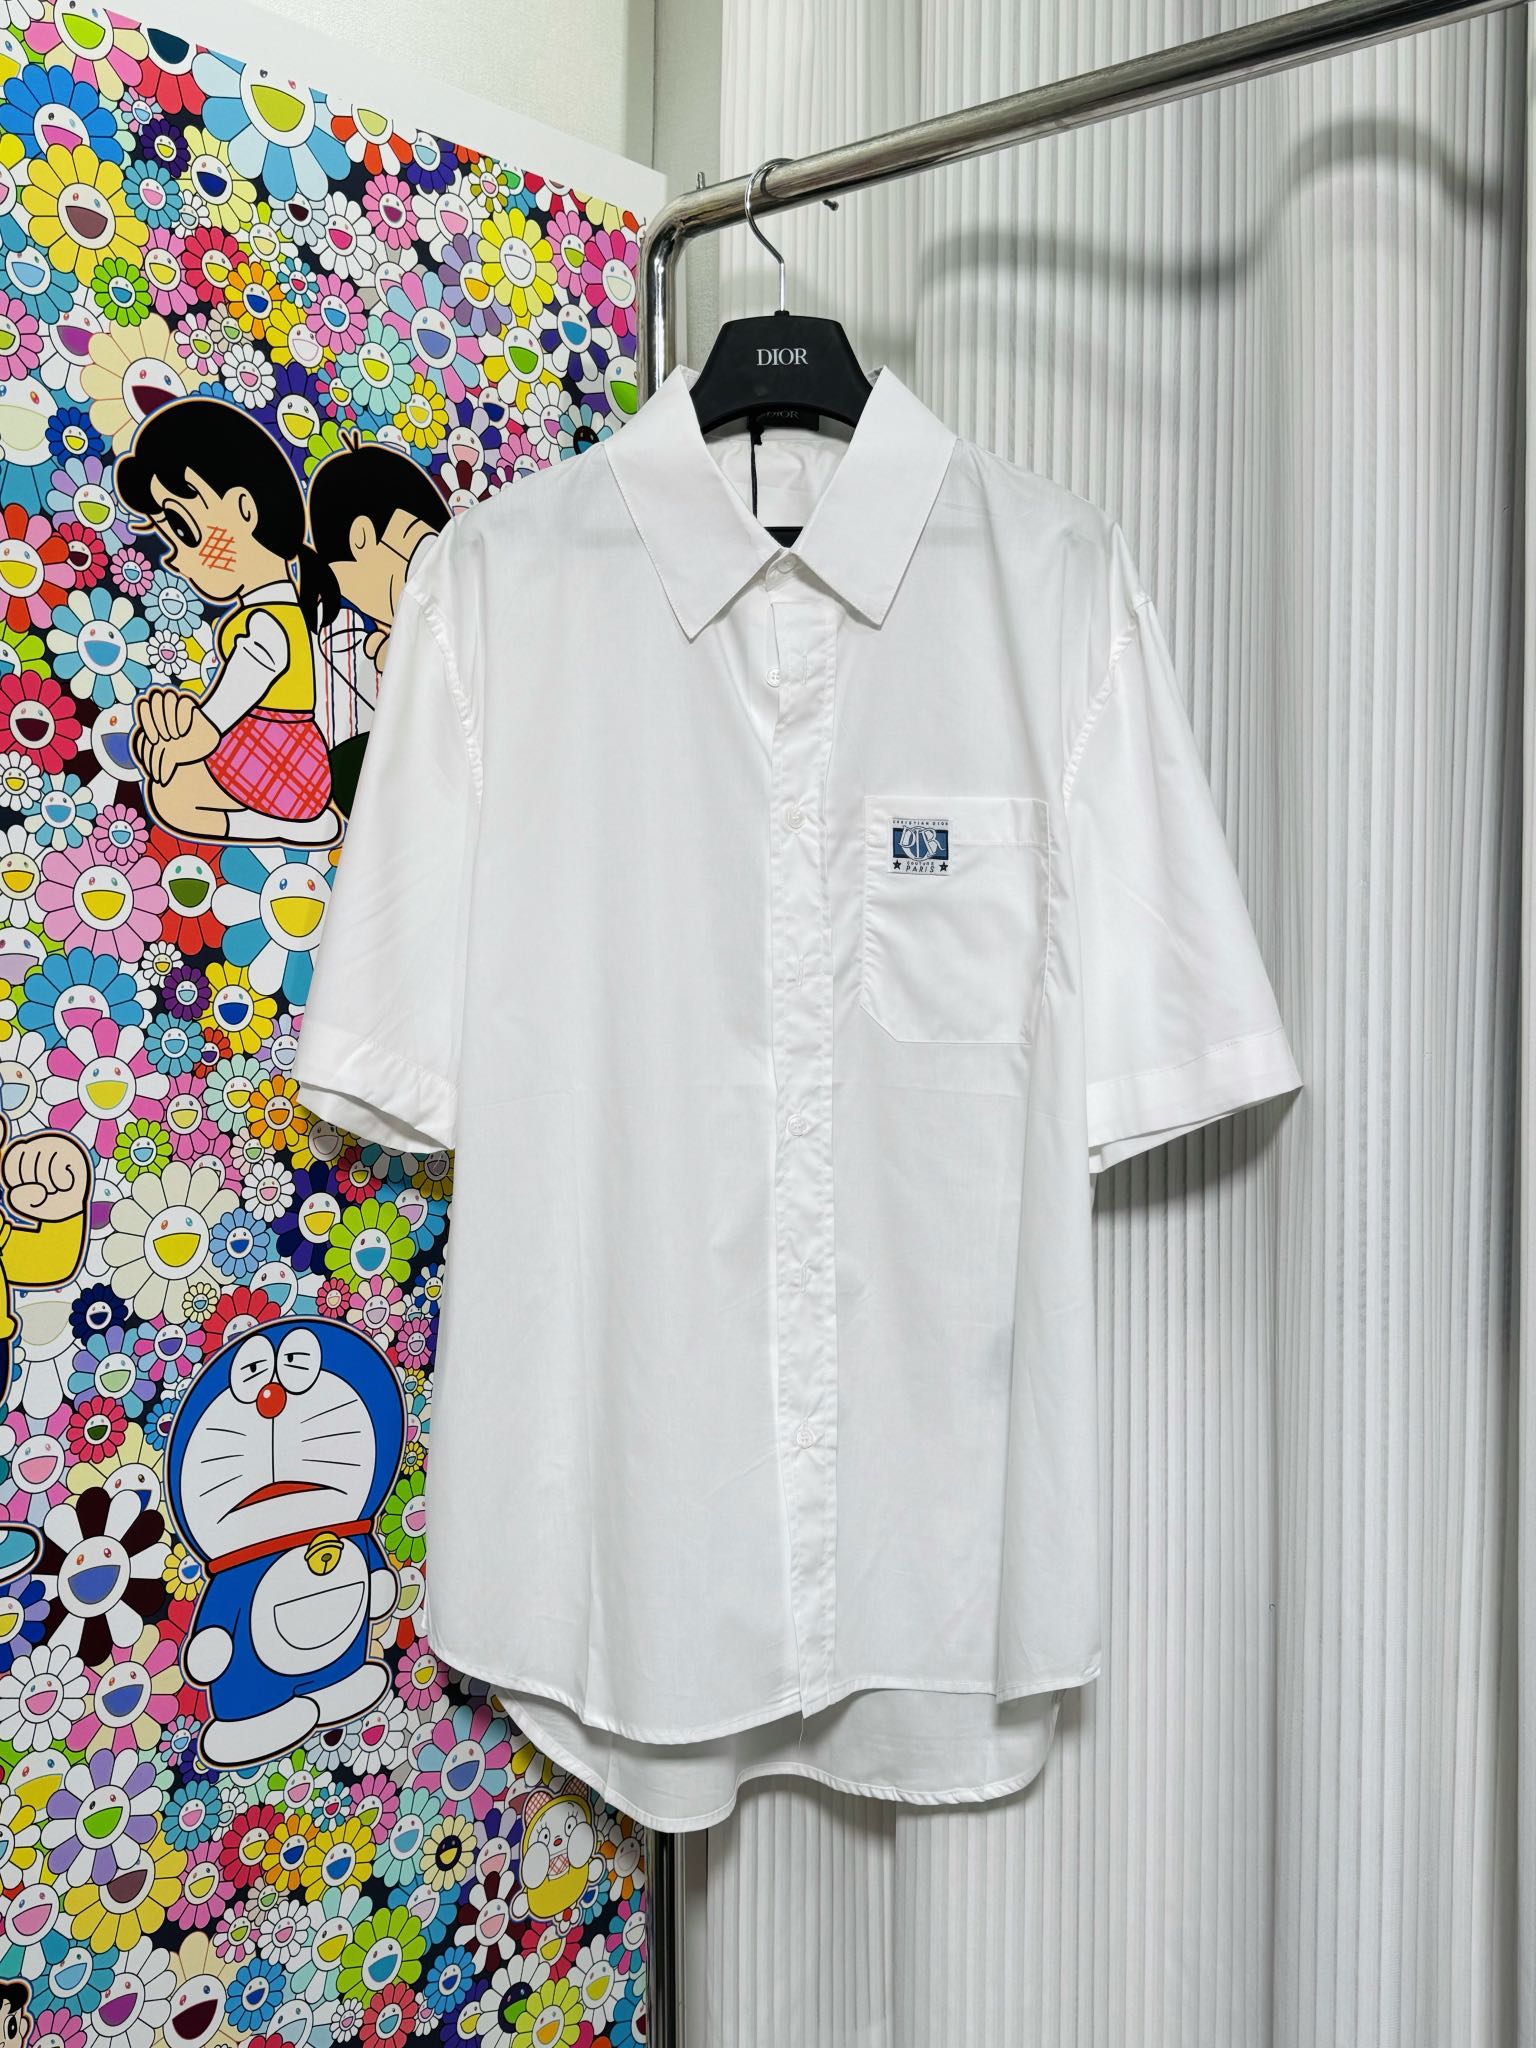 Dior Ropa Camisas y blusas Universal para hombres y mujeres Algodón Colección primavera – verano